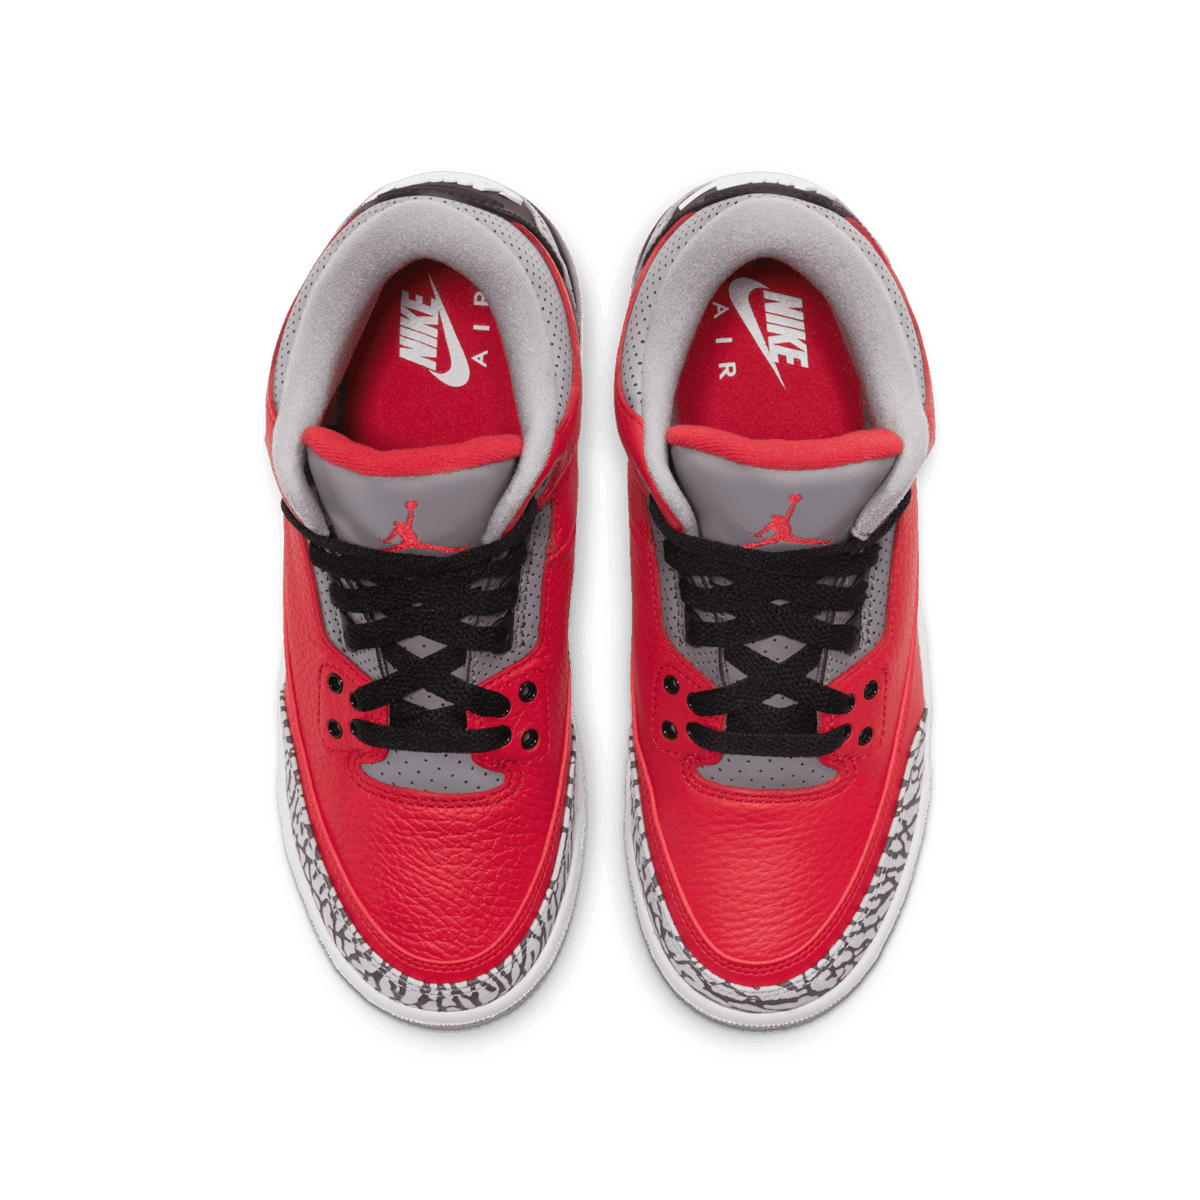 Air Jordan 3 Retro SE Fire Red (GS) Angle 1